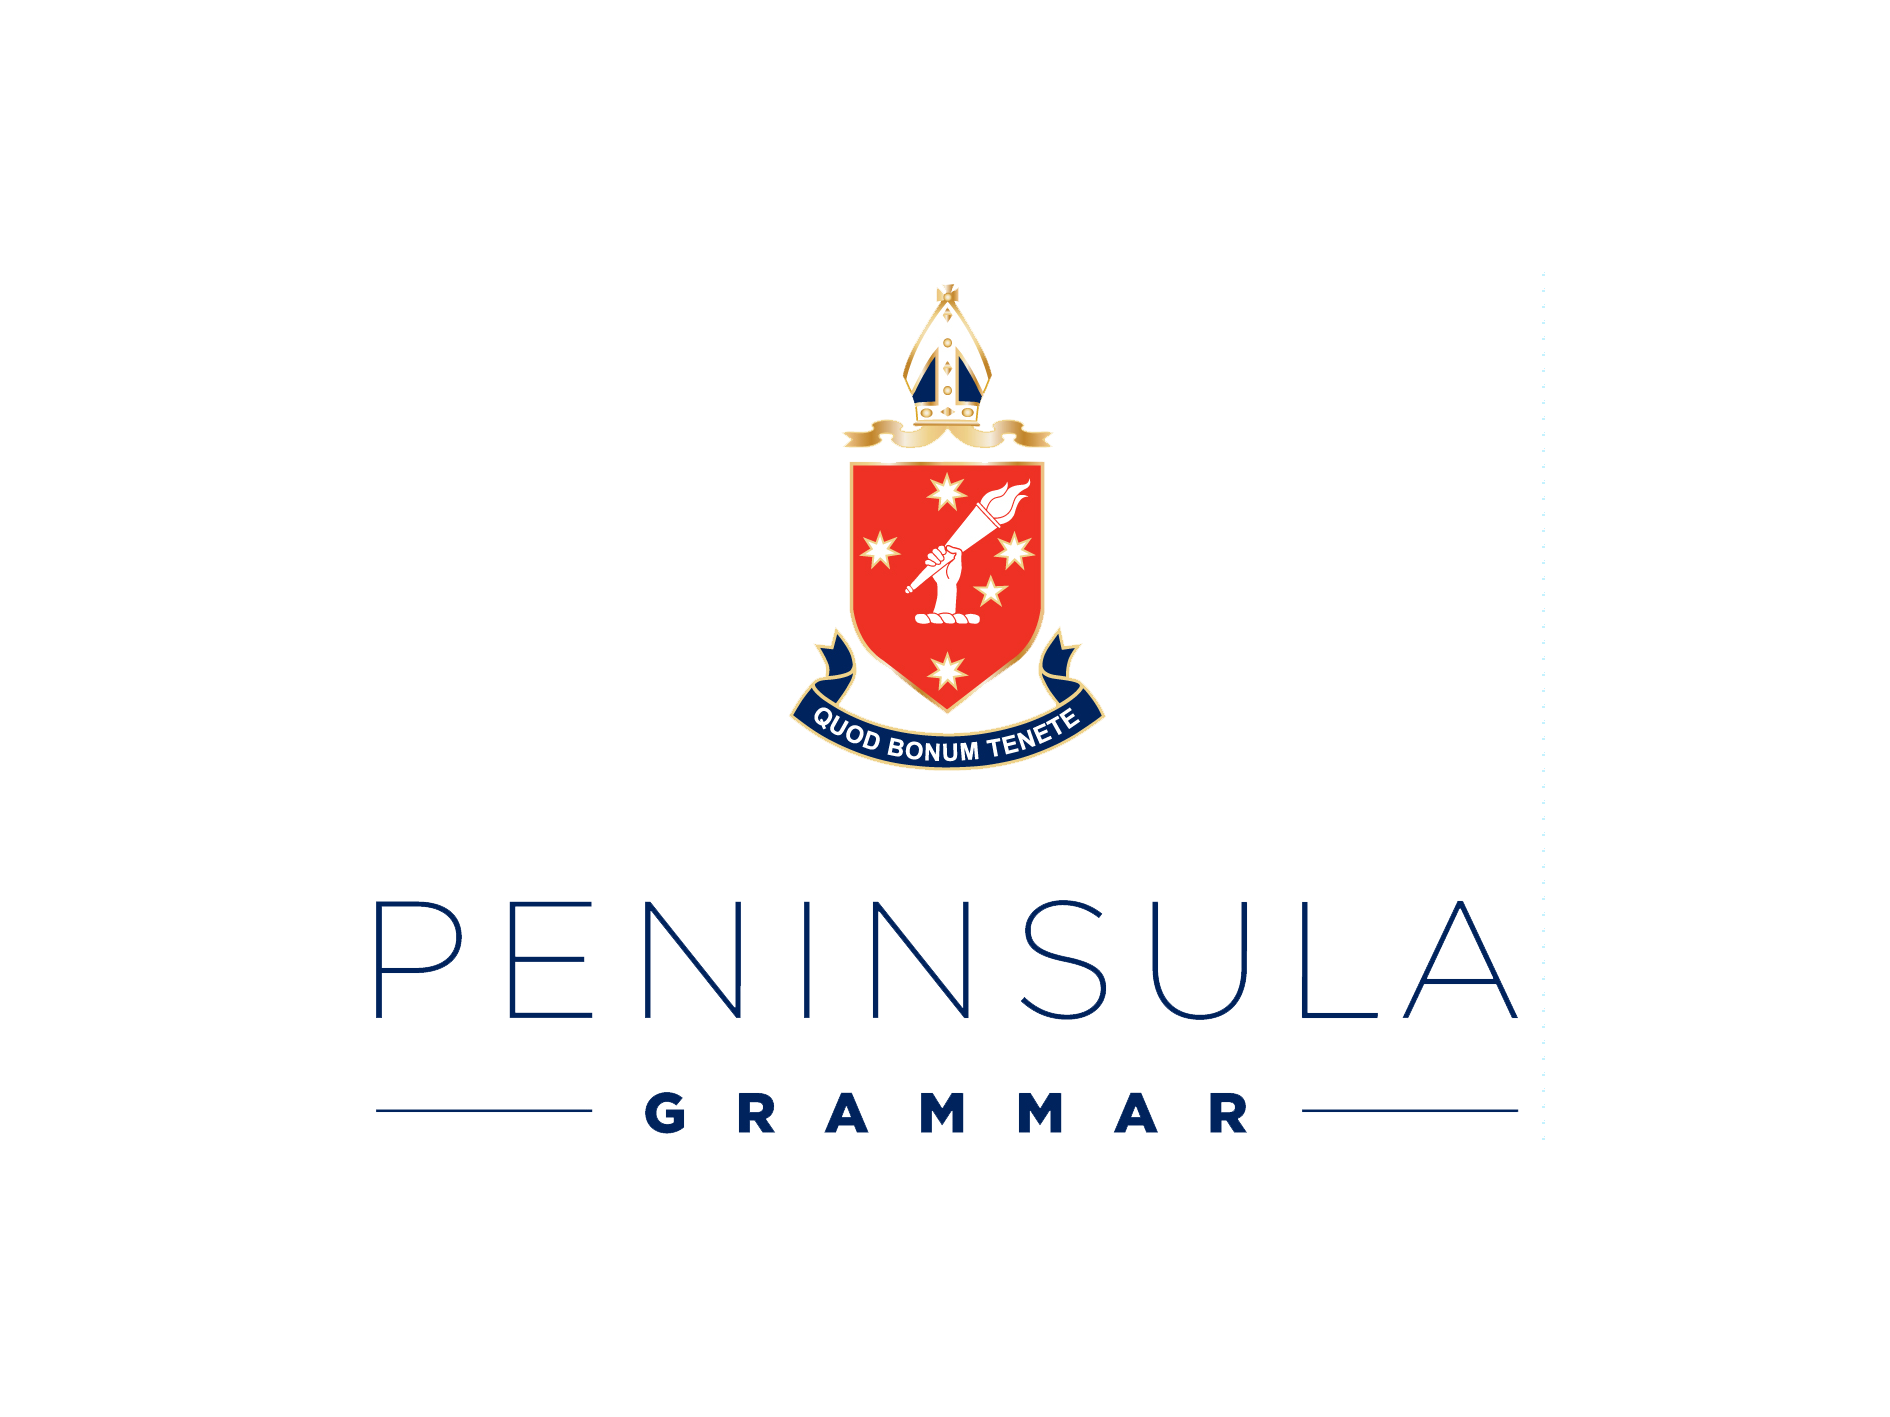 Peninsula-Grammar-logo-transparent-png